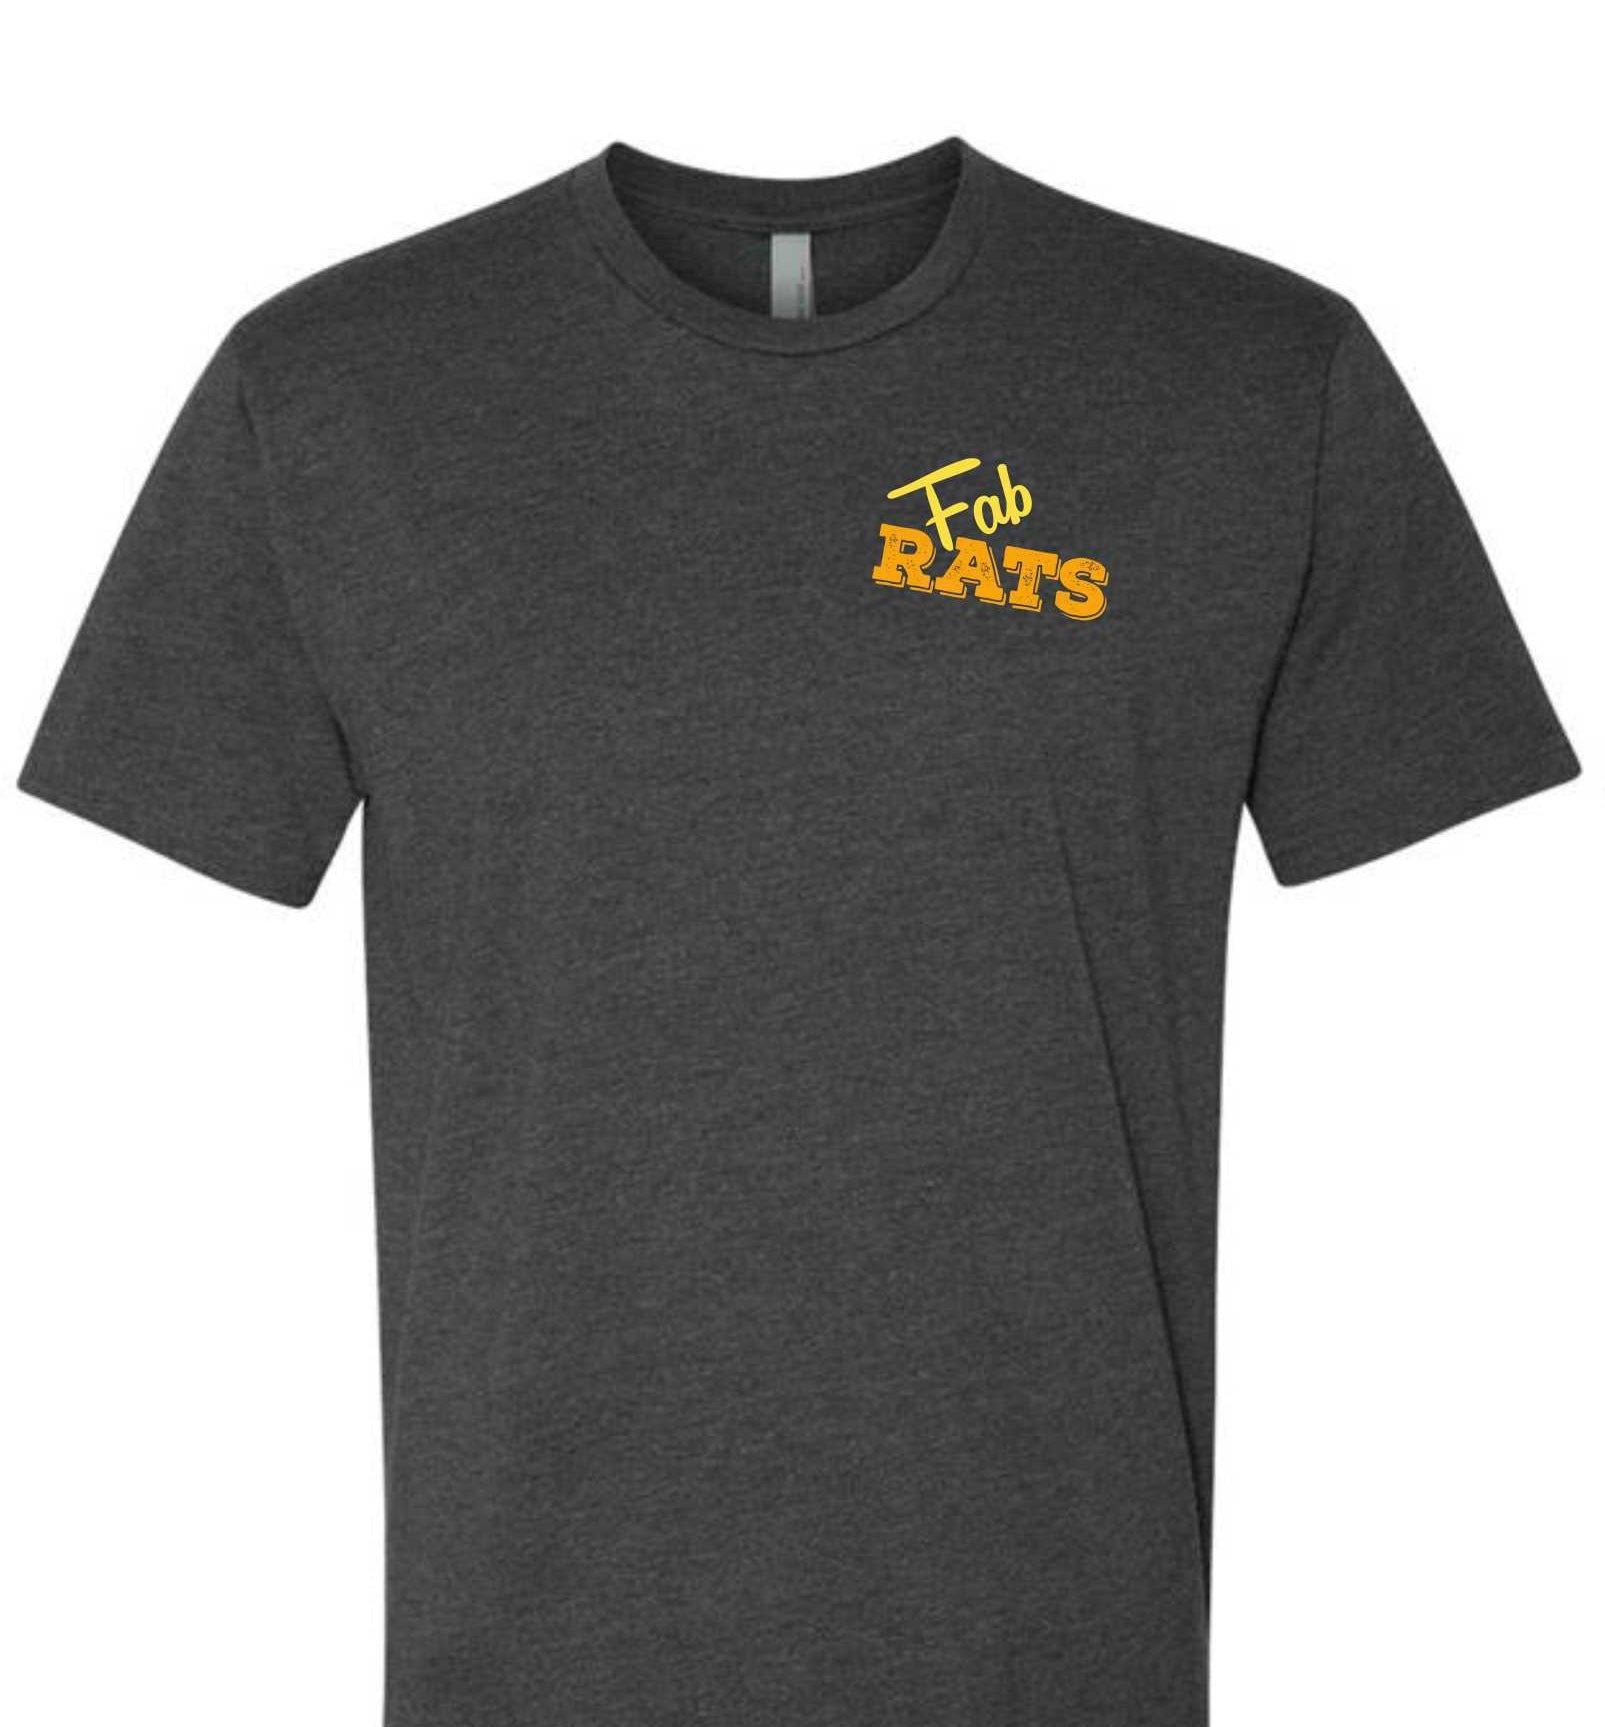 Fab Rats Original Welder Rat Logo T-Shirt – The Fab Rats